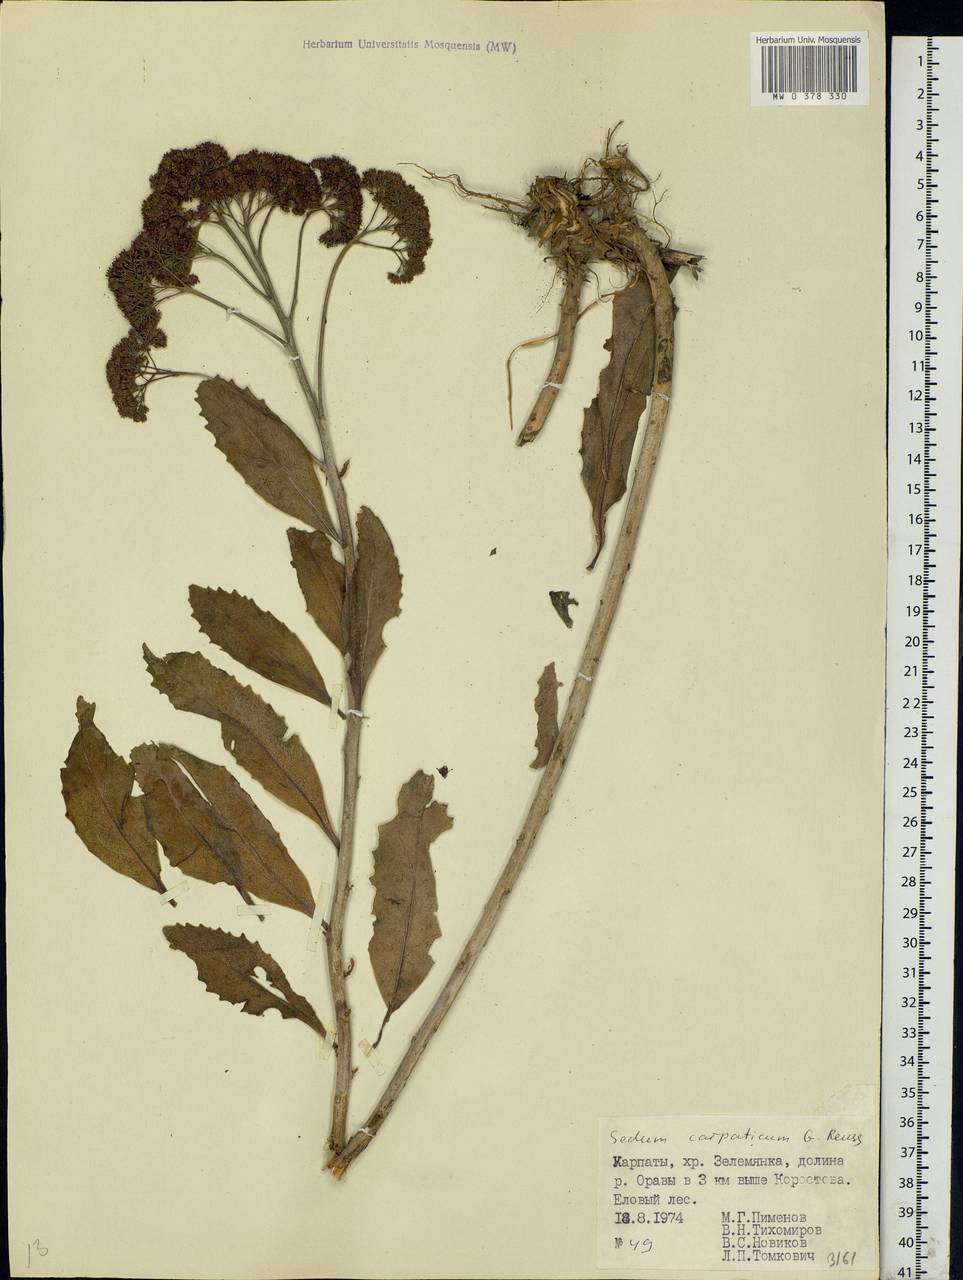 Hylotelephium telephium subsp. telephium, Eastern Europe, West Ukrainian region (E13) (Ukraine)